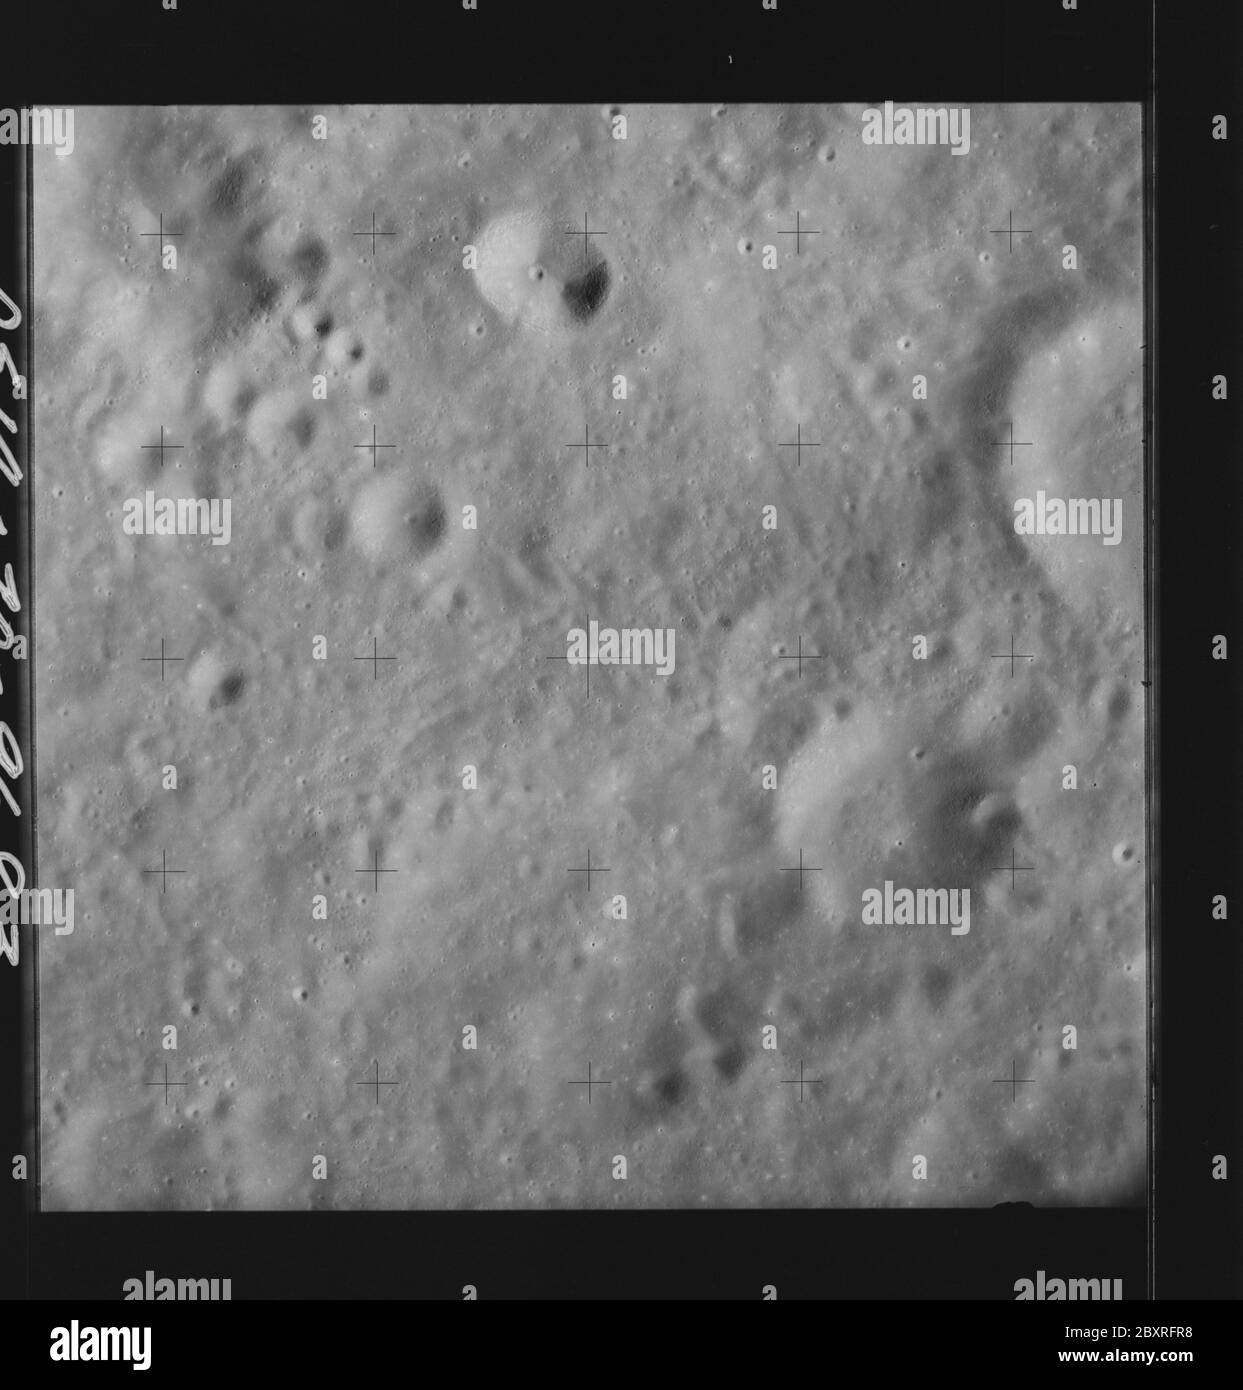 AS14-70-9683 - Apollo 14 - immagine della missione Apollo 14 - Vista della superficie lunare a sud del cratere del Vesalius e a nord del cratere del Meitner; portata e contenuto: Il database originale descrive questo come: Descrizione: Vista della superficie lunare a sud del cratere Vesalius e a nord del cratere Meitner. Sono state scattate immagini sulla Rivoluzione 26 della missione Apollo 14. Il caricatore di pellicola originale era etichettato Q, il tipo di pellicola era 3400BW (Panatomic-X, Nero e Bianco), lente da 80 mm con un'elevazione del sole di 28 gradi. La scala approssimativa della foto è 1:1,380,000. La latitudine del punto principale era 7.5S per Longitudine 112.0E, con Foto Stock